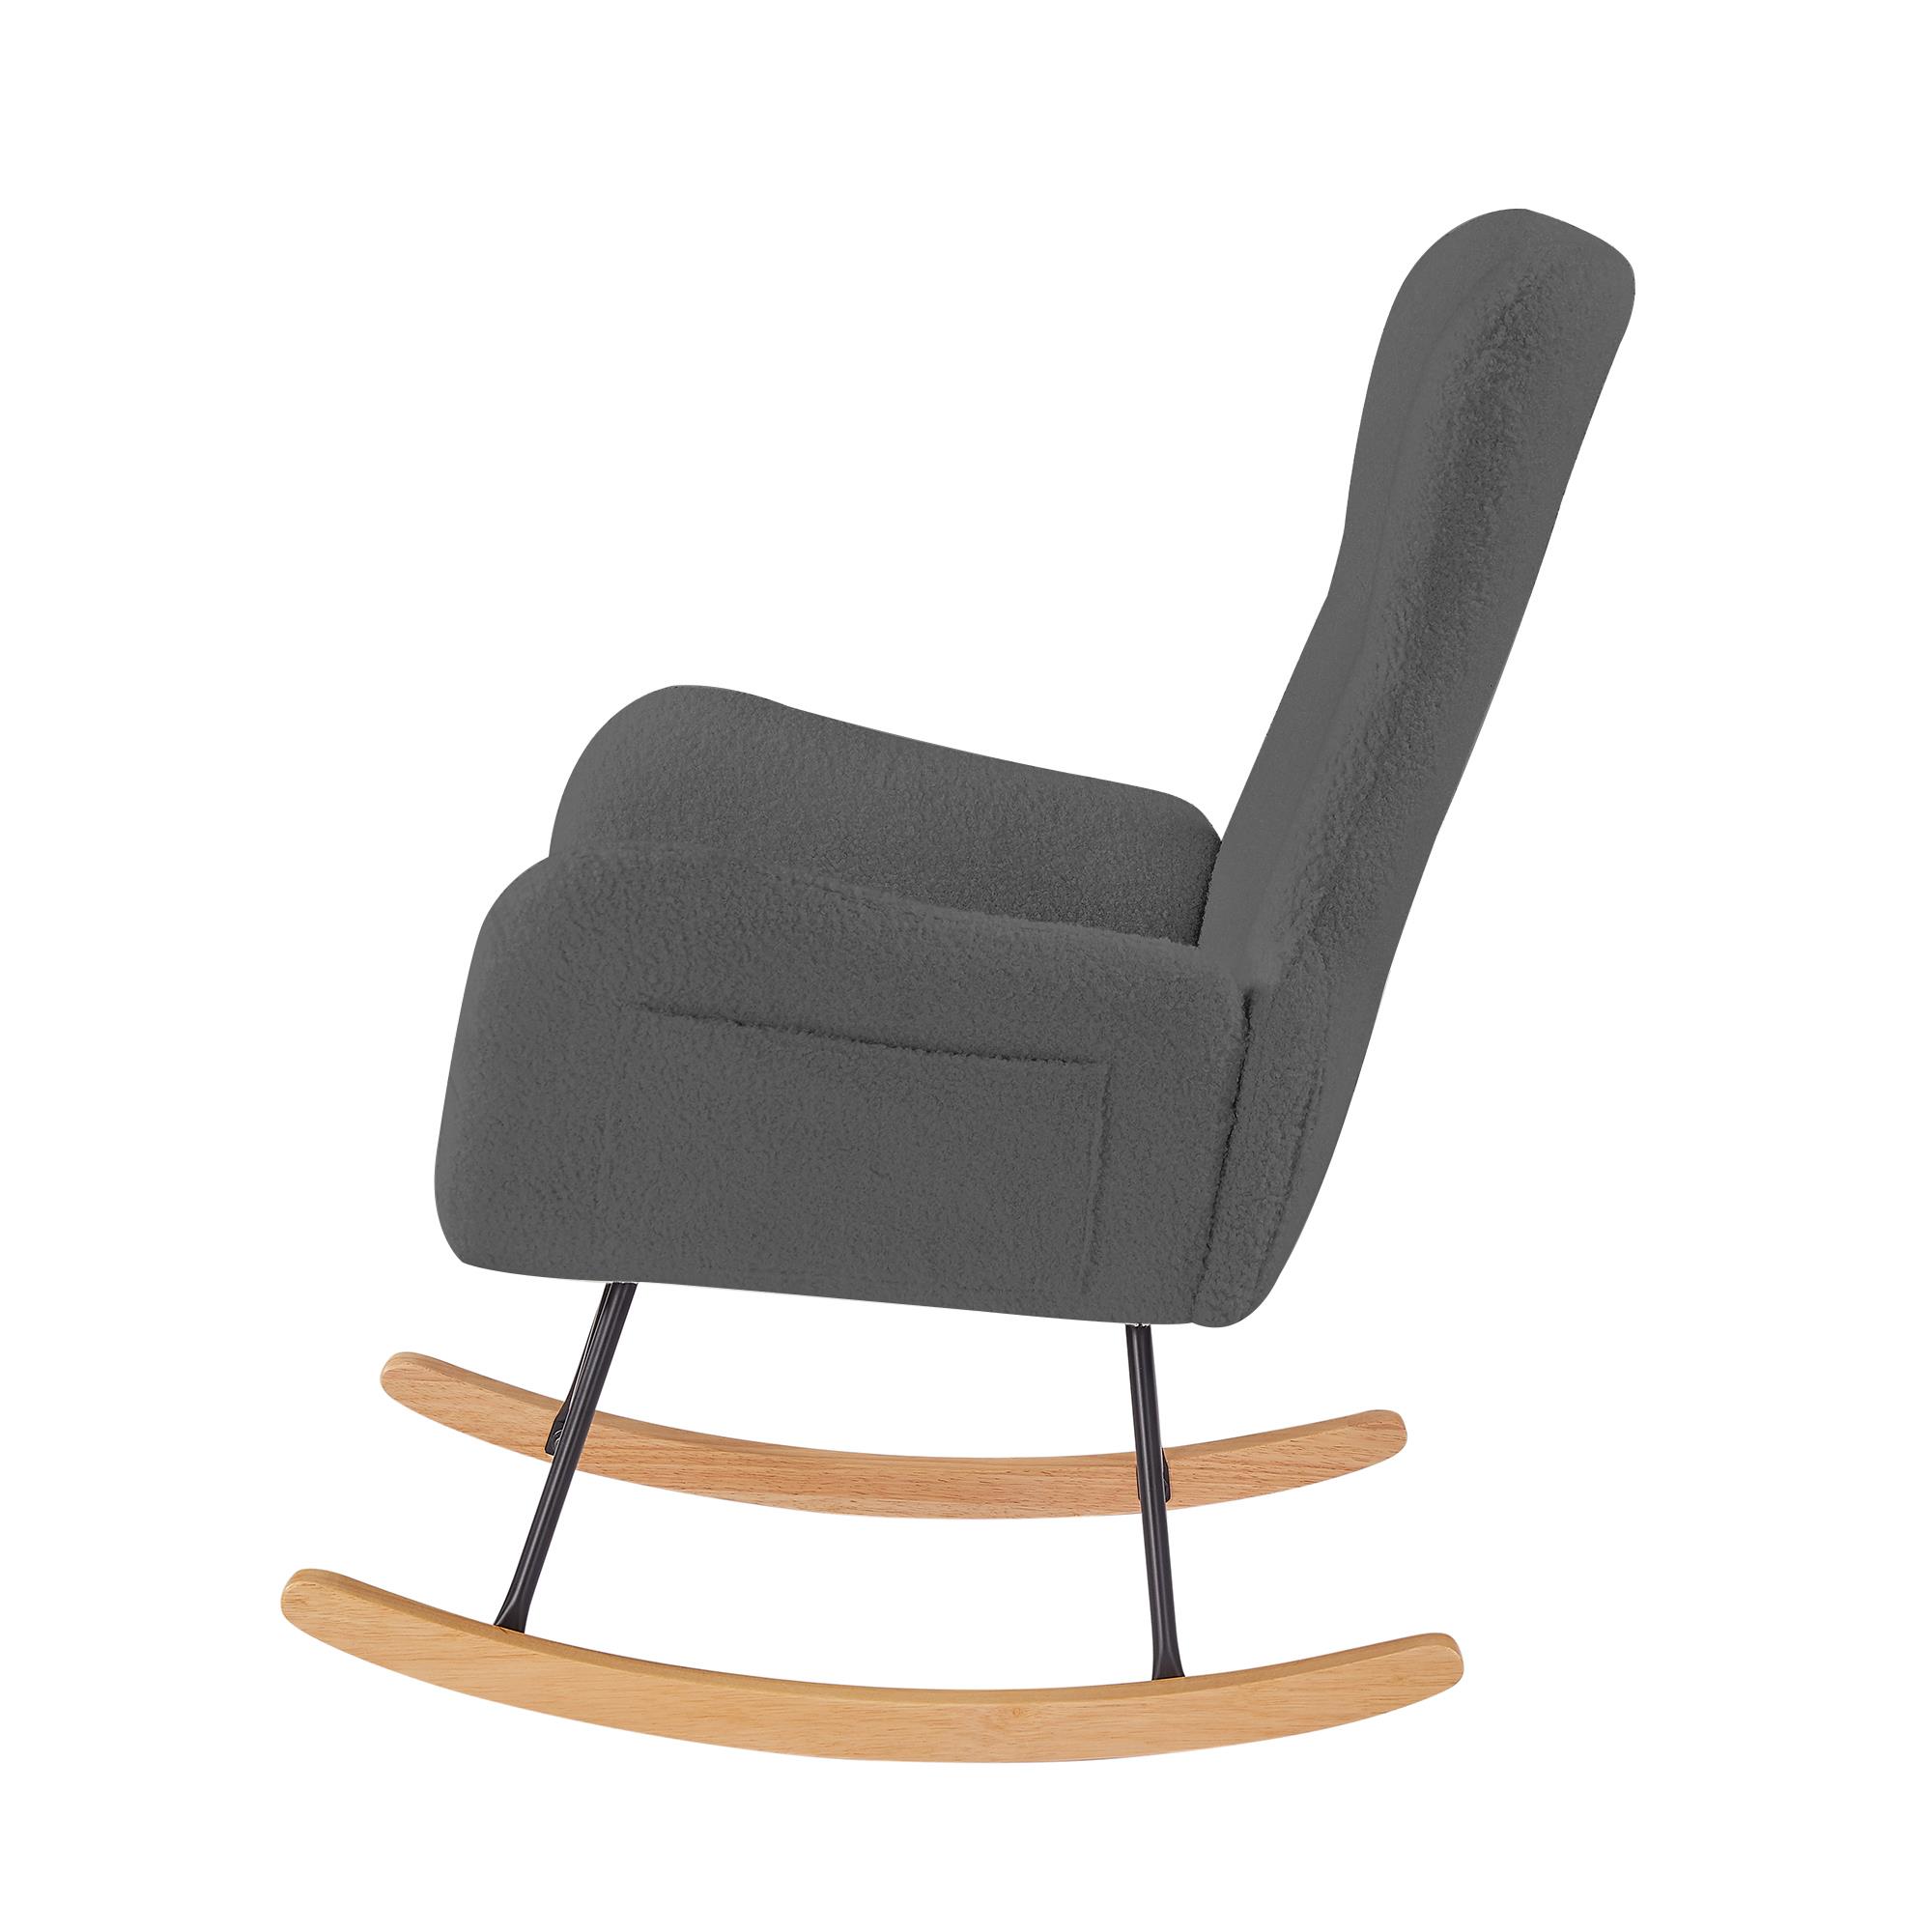 כורסא נדנדה מעוצבת יוקרתית לבית דגם אוסלו בד בוקלה צבע אפור